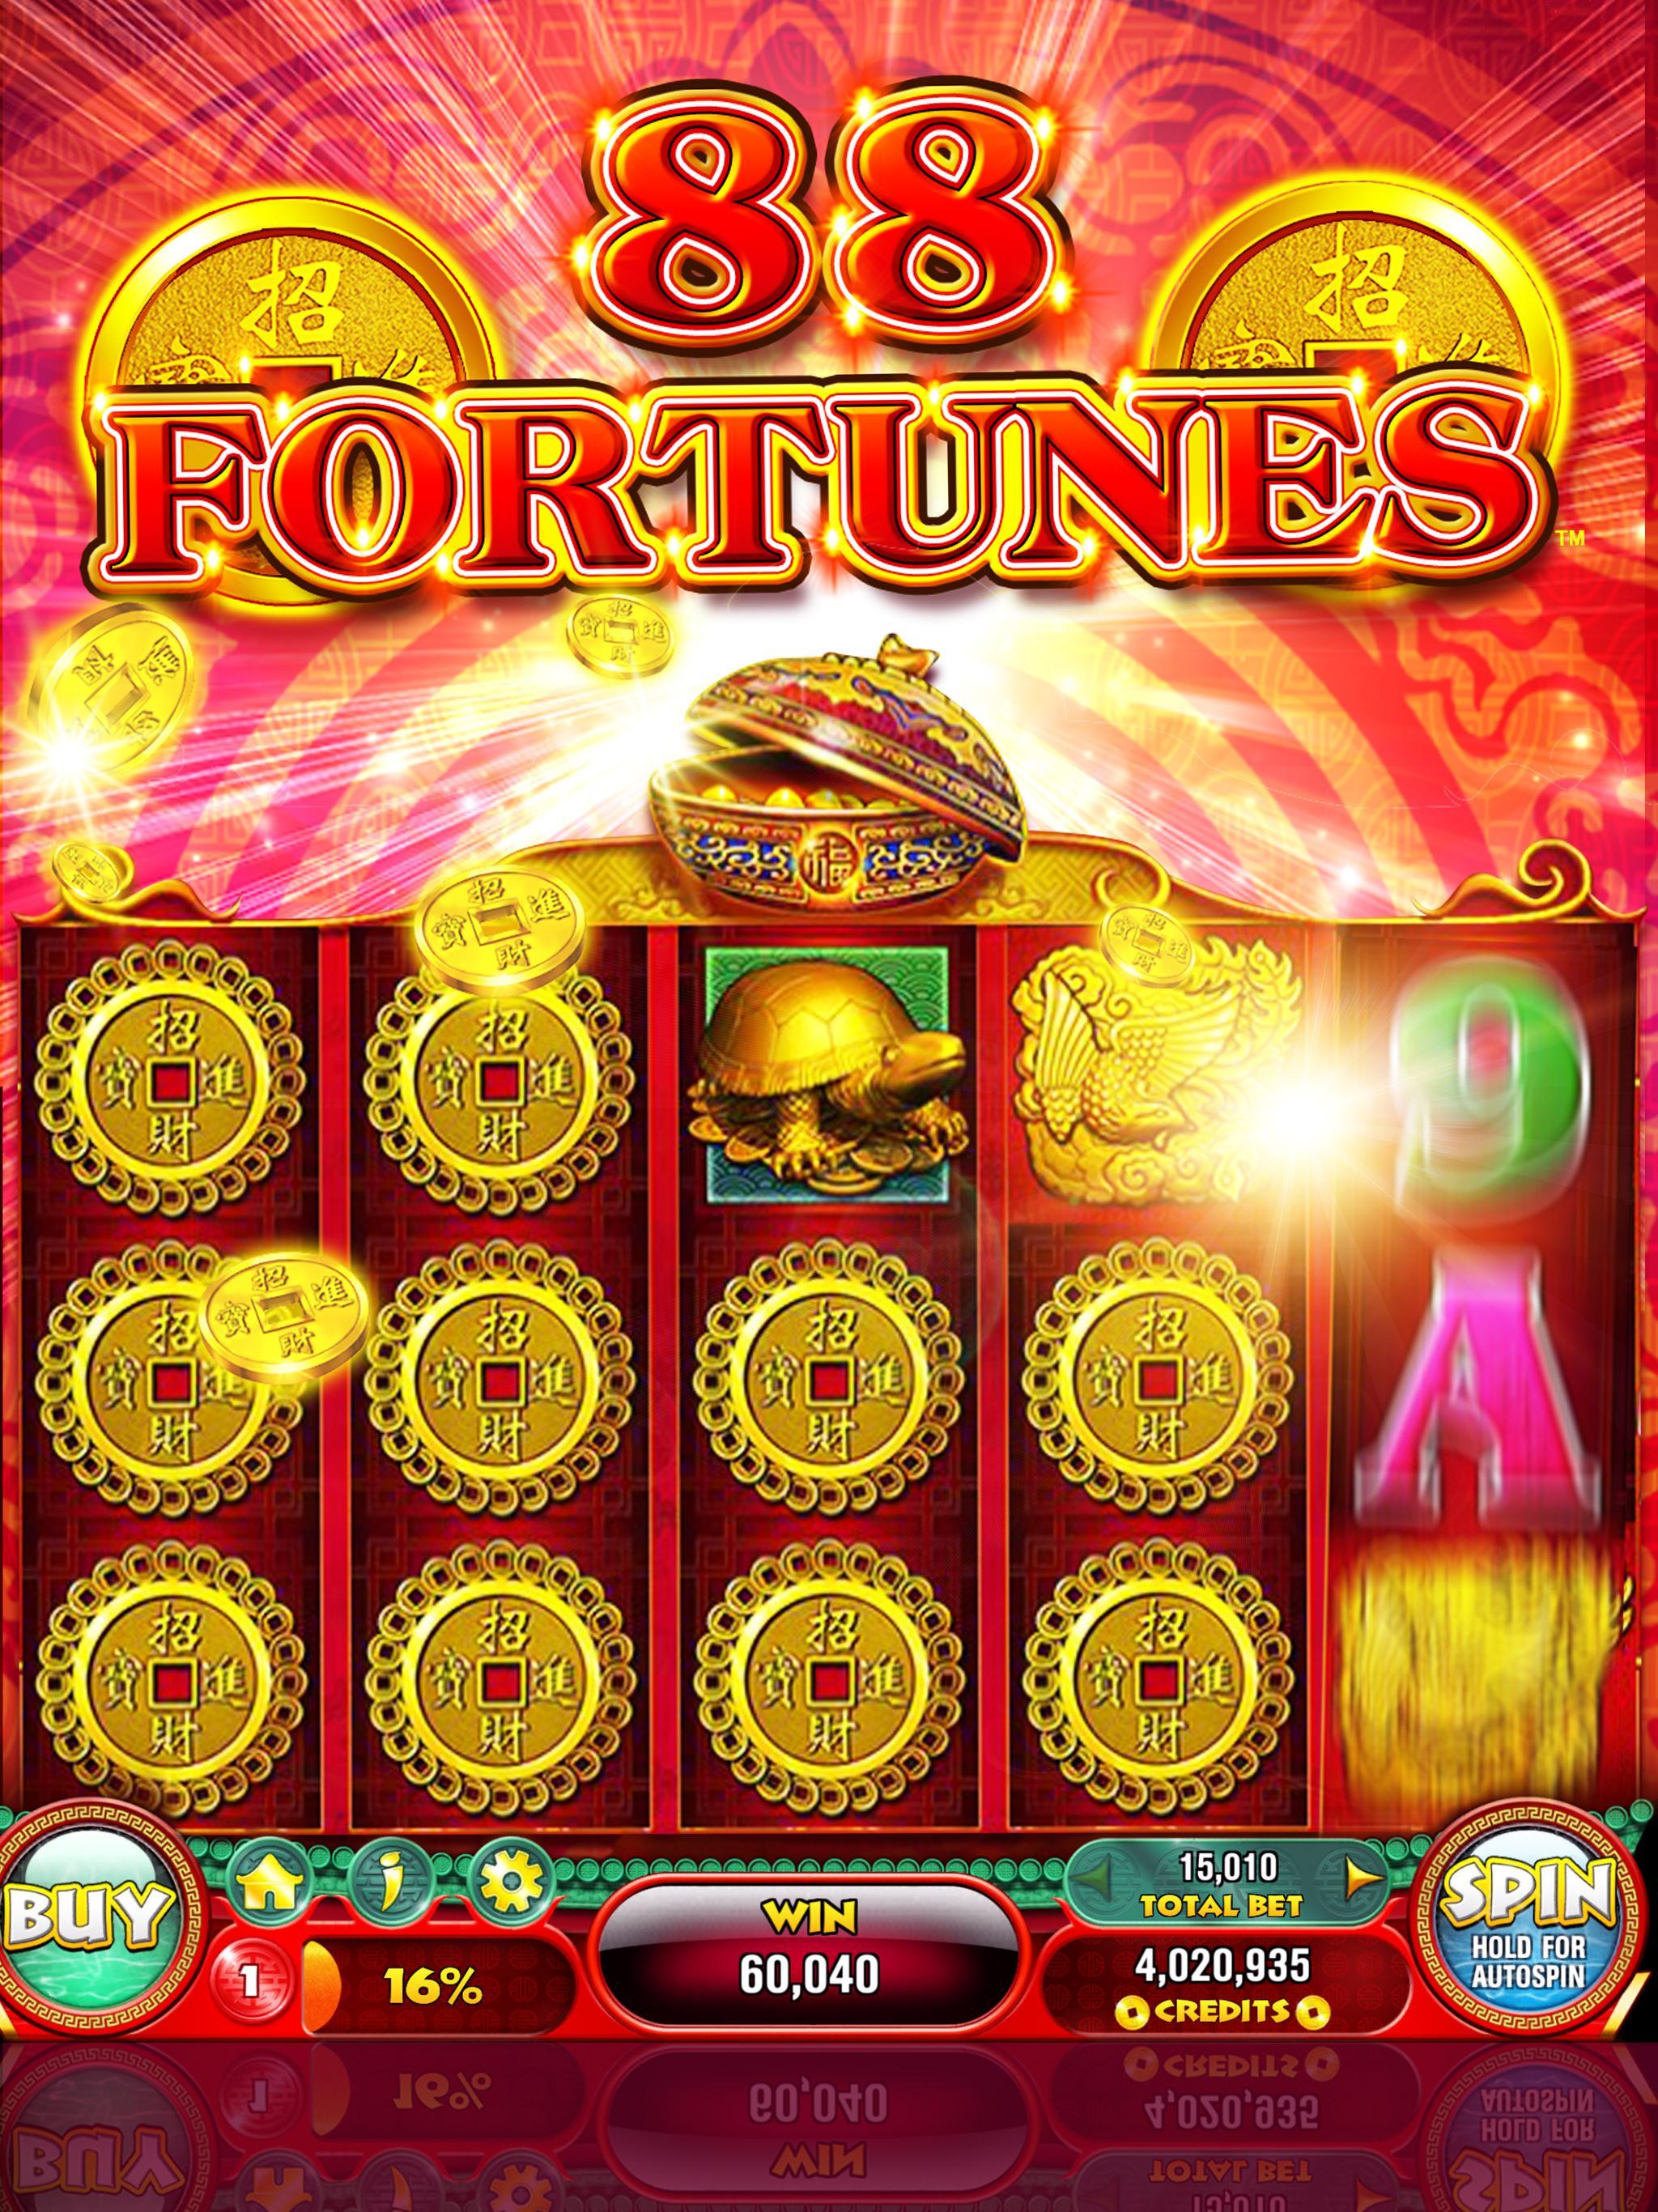 88 Fortunes Casino Games & Free Slot Machines 3.2.38 Screenshot 6